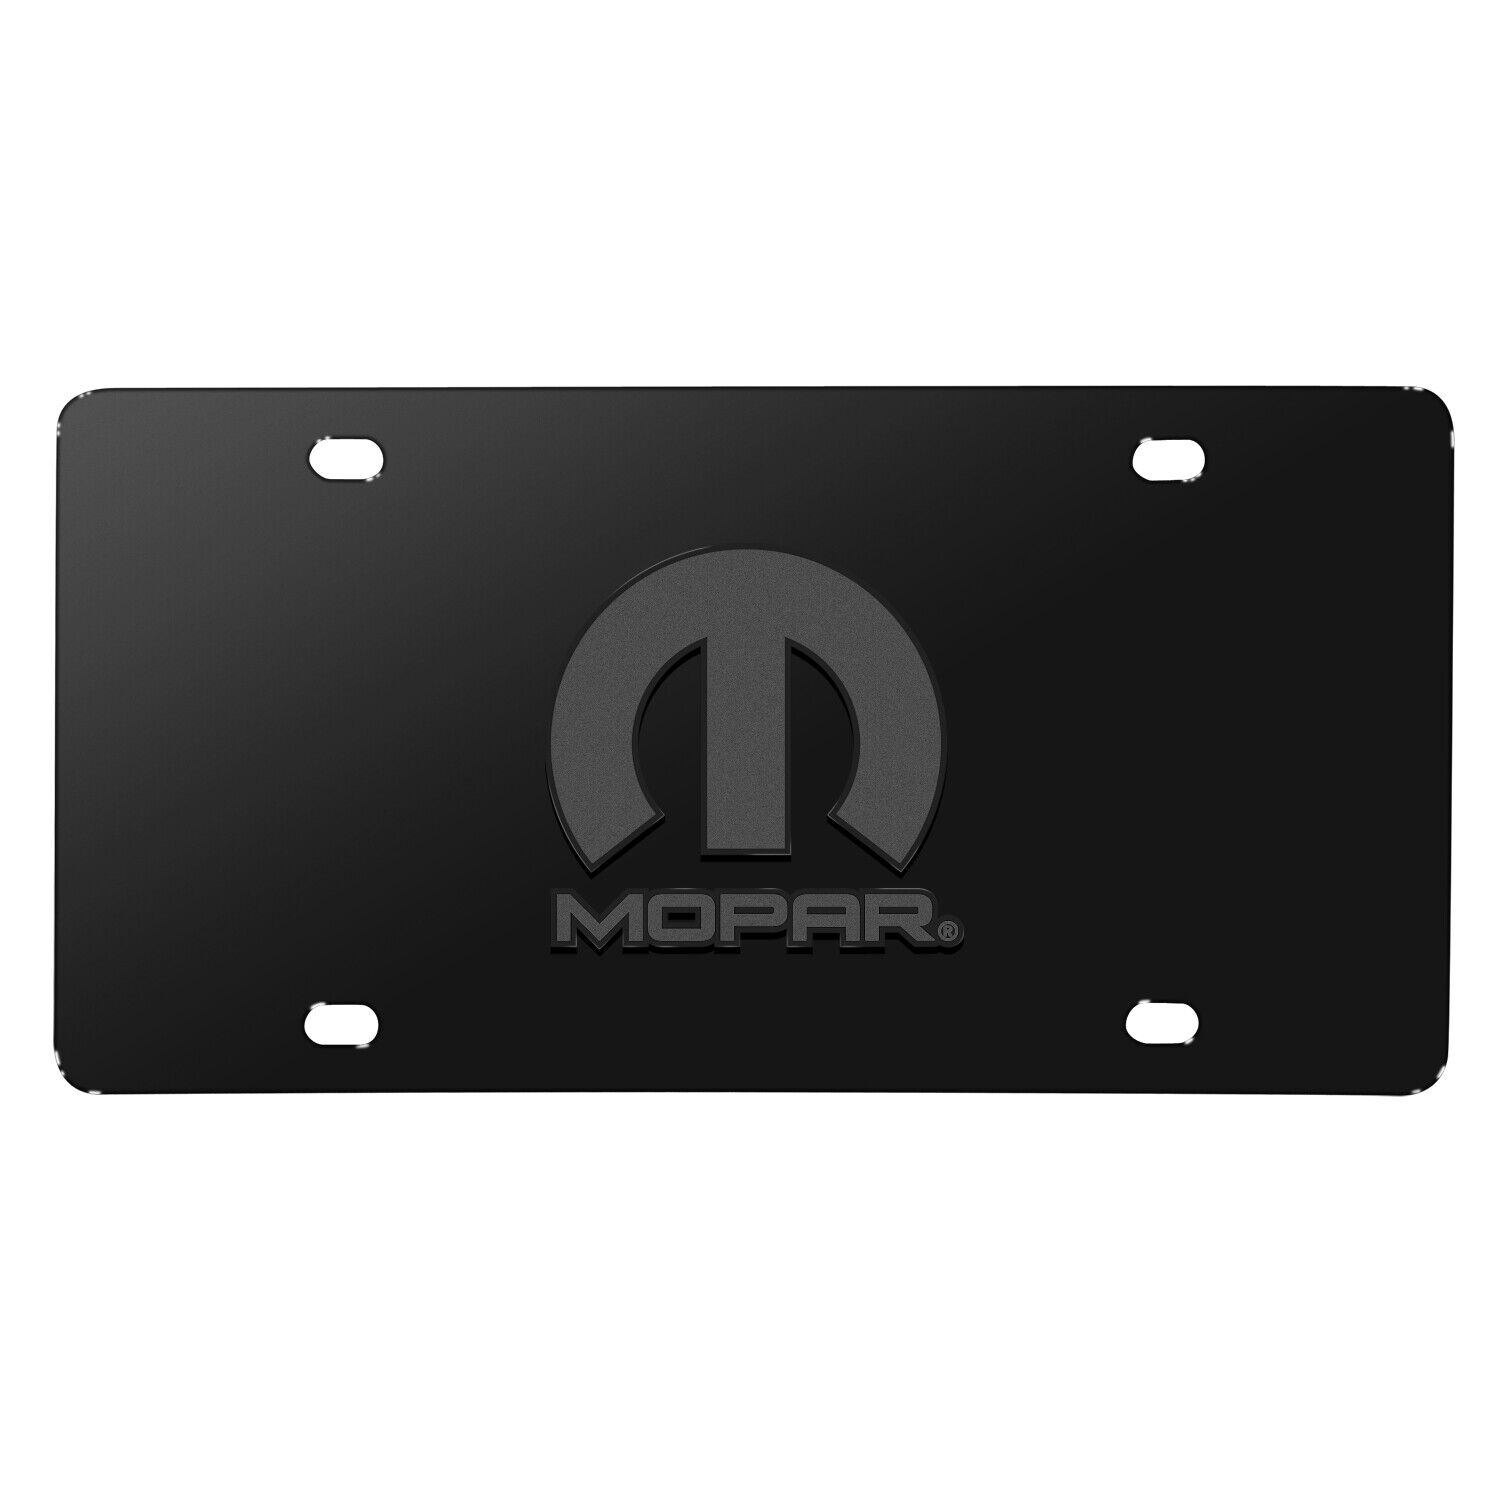 Mopar Logo 3D Dark Gray Logo on Black Stainless Steel License Plate